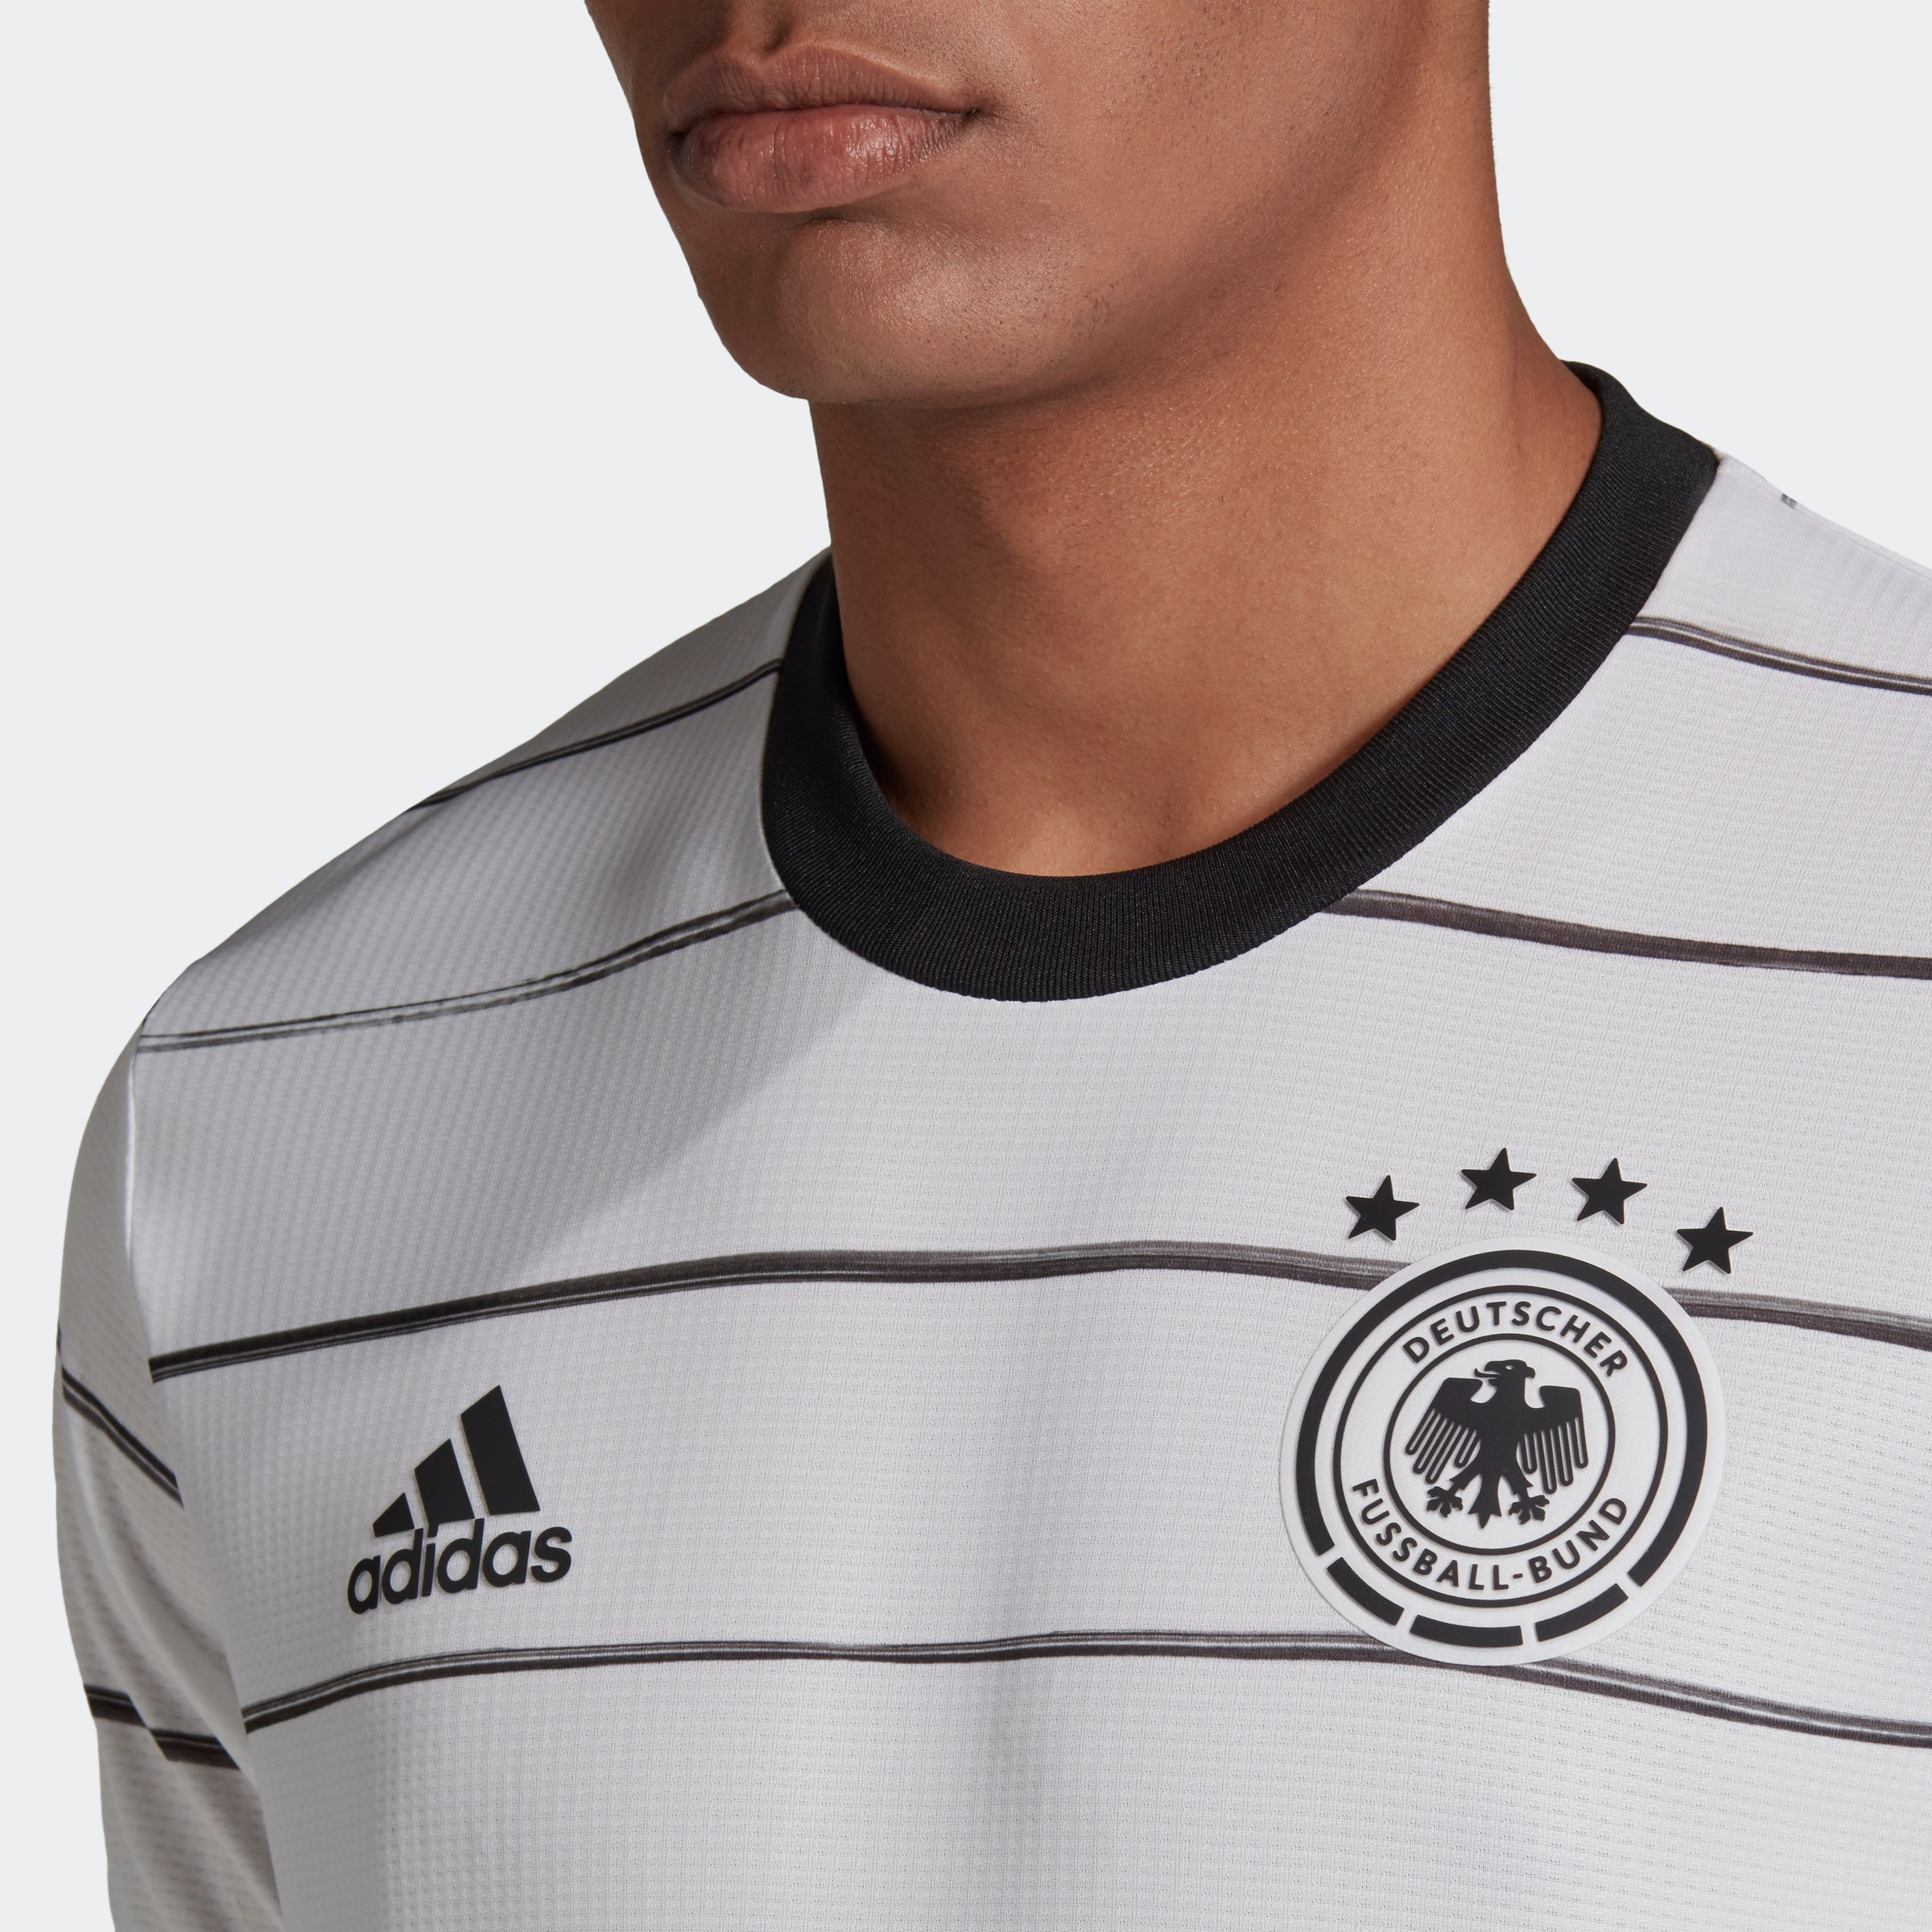 Адидас сборная германии. Adidas DFB сборной Германии. Adidas DFB сборной Германии костюмы. Футболка adidas Originals сборной Германии. Футболка адидас Германия.